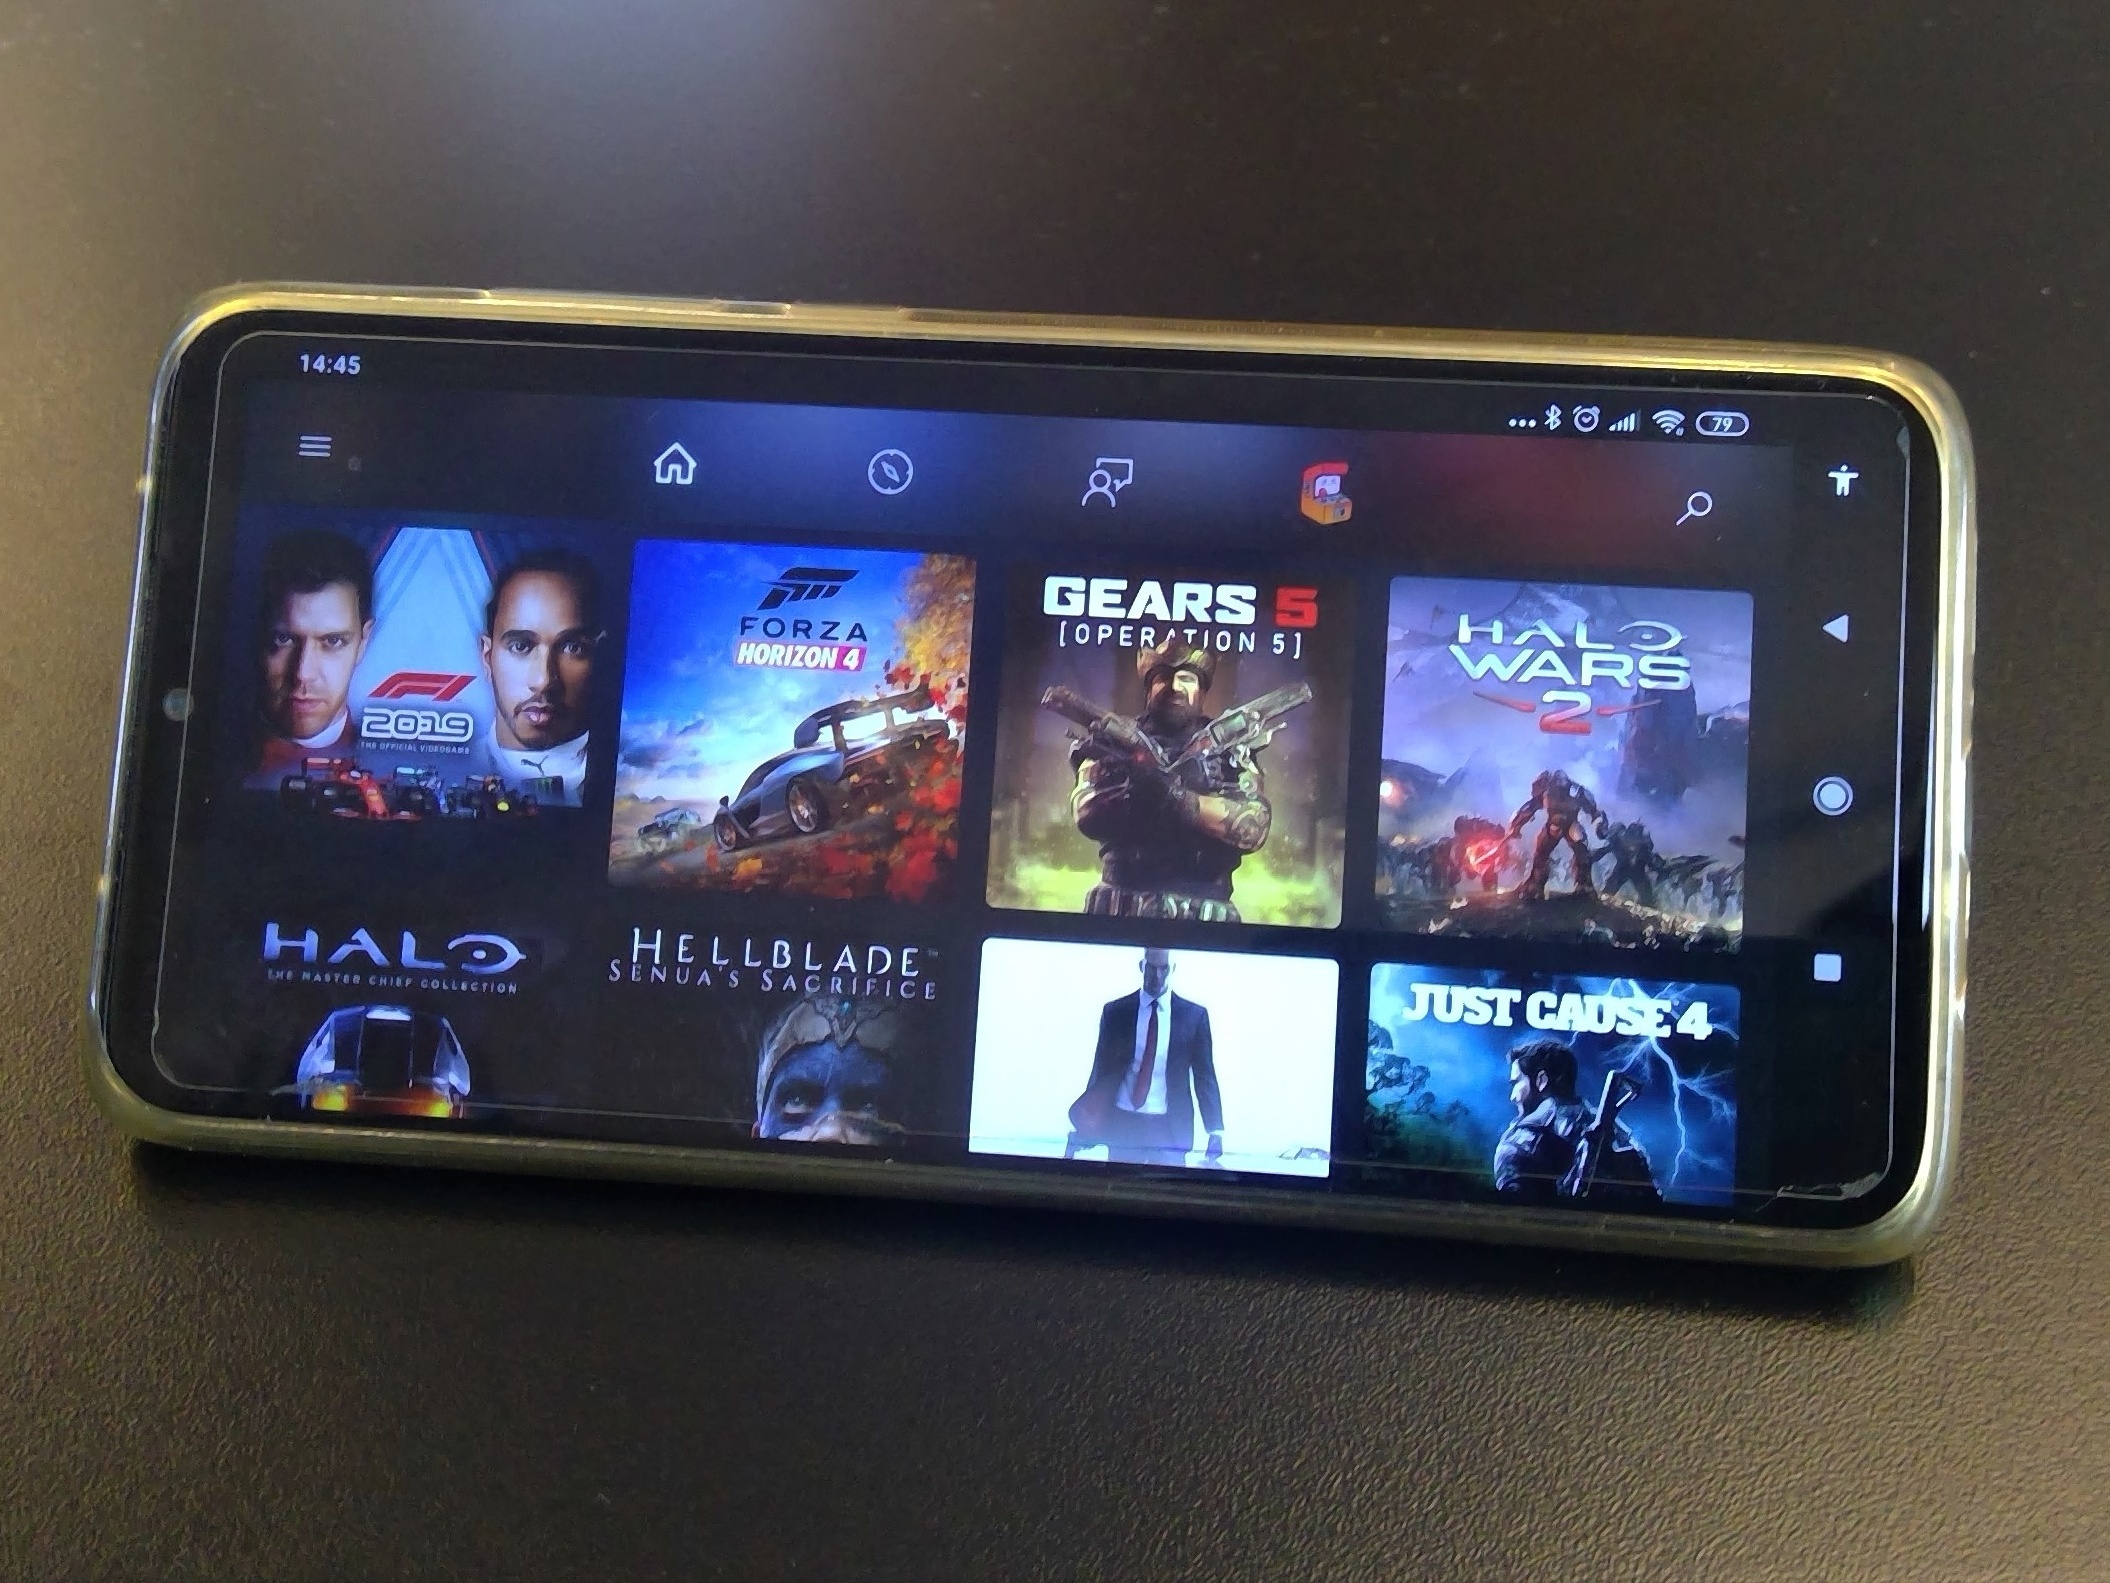 Xbox Cloud Gaming a caminho das TVs Samsung este mês